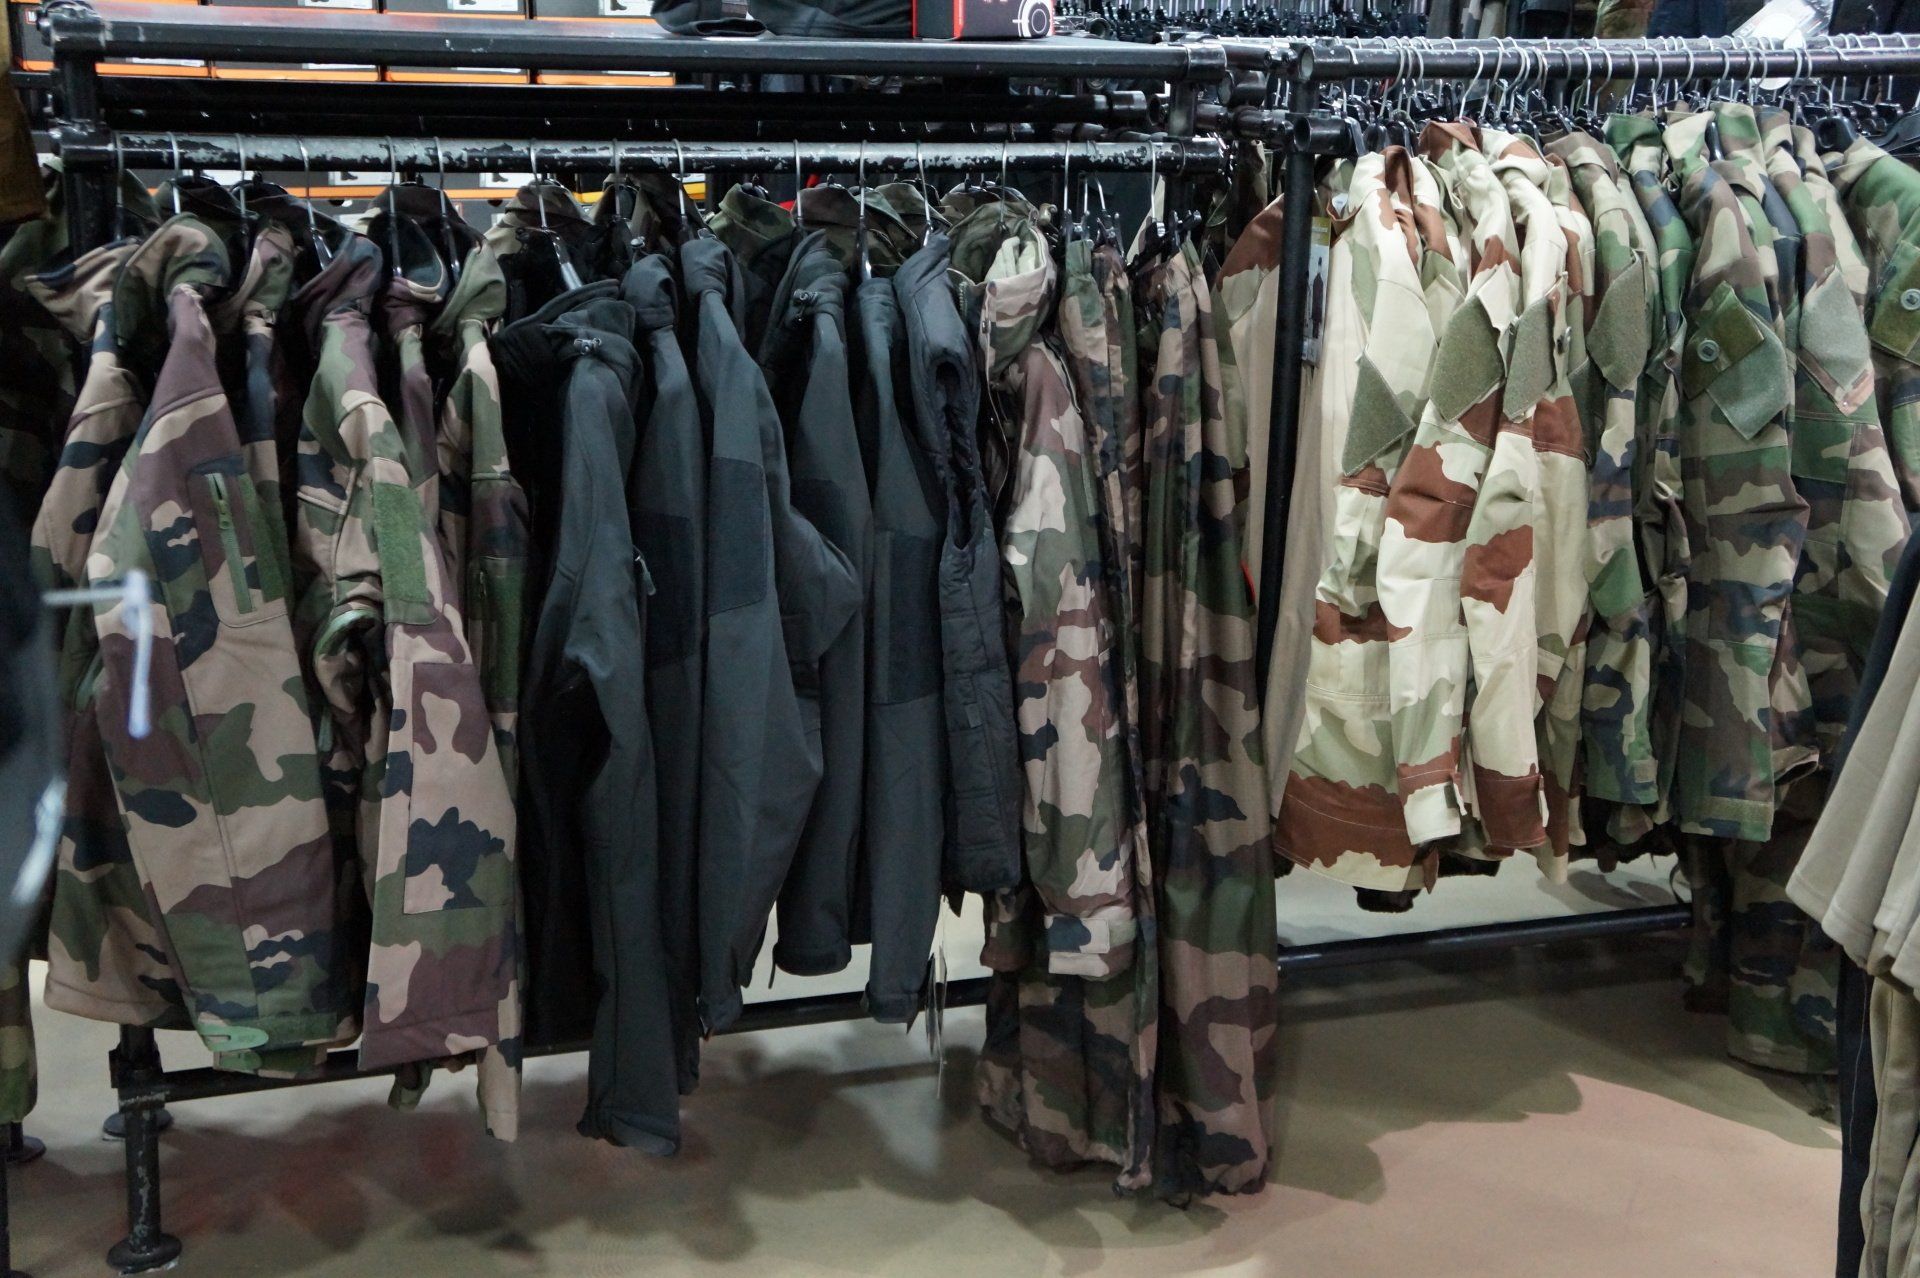 Vêtements militaires